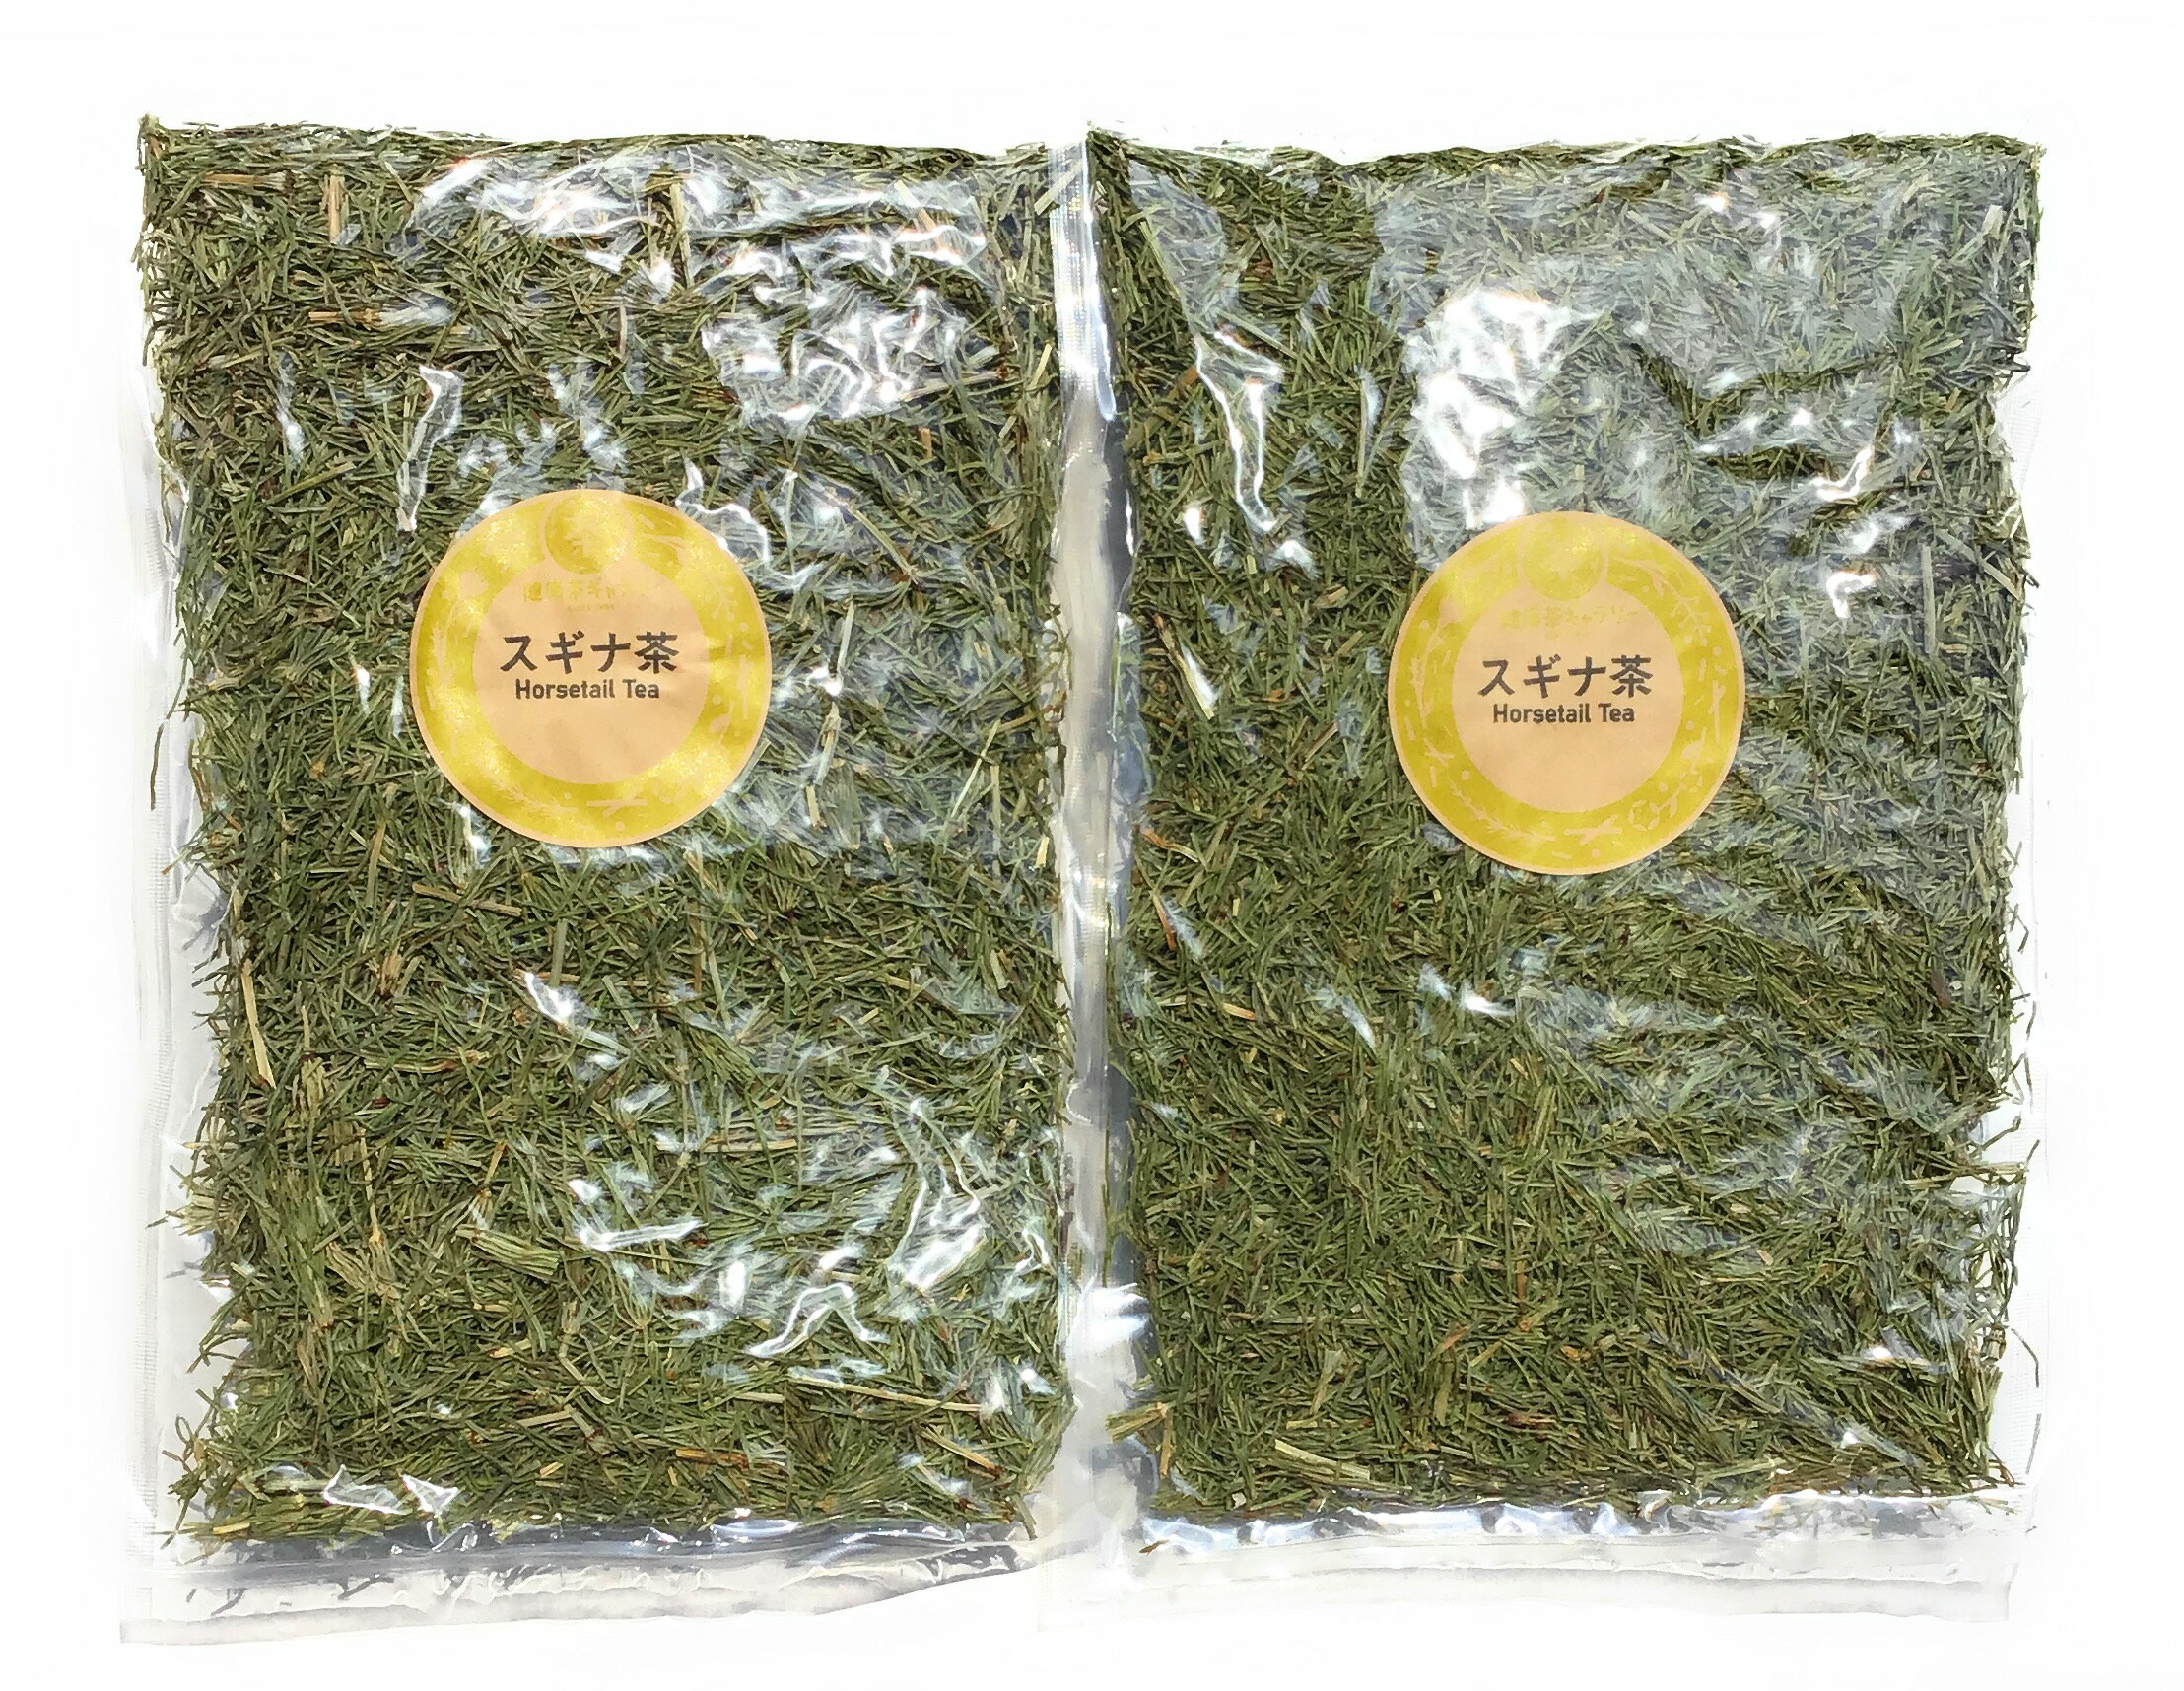 内 容 スギナ茶 120g×2個 保存方法 直射日光、高温多湿を避けて保存。 原材料 スギナの茎・葉 原産国 日本 賞味期限 1年以上 広告文責 健康茶ギャラリー 0172-35-8458 メーカー（製造） 健康茶ギャラリー 区分 日本製・健康茶スギナ茶 Horsetail Tea トクサ科スギナ(ホーステール)の葉のお茶。 古くから体内機能の調整に用いられています。 水分の滞りが気になる方、健やかな呼吸や みずみずしいツヤを維持したい方におすすめです。 ※ノンカフェイン ※心臓・腎臓の機能不全の方、妊娠中の方は飲用をお避けください。 ※本品製造工場では「大豆」を含む製品を製造しております。